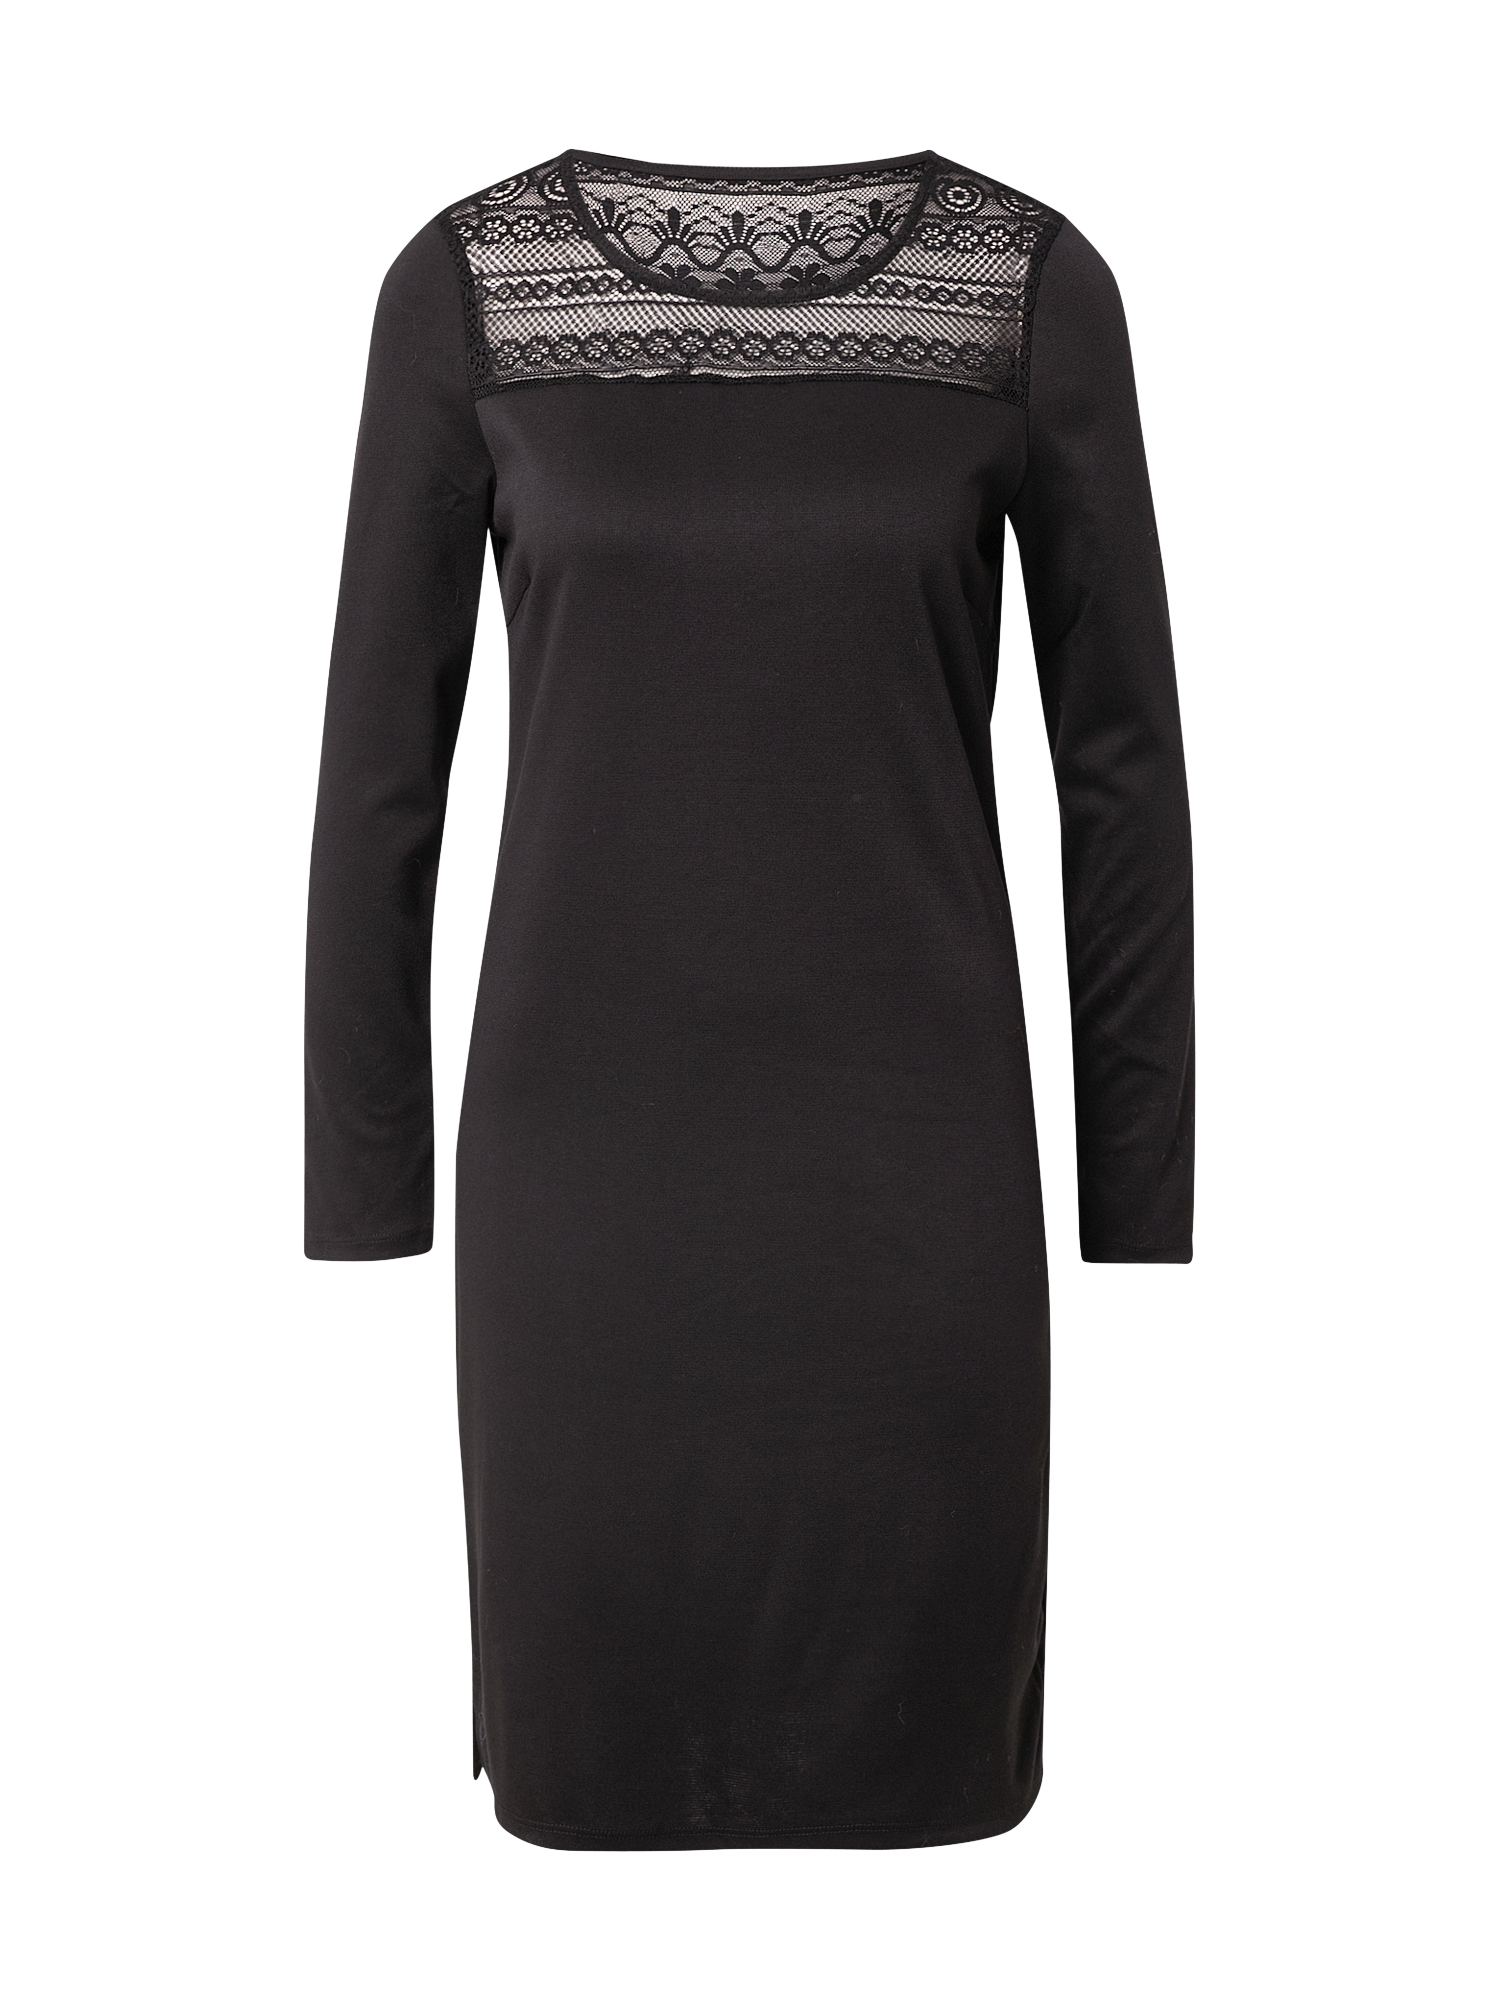 Odzież Kobiety VILA Sukienka Tinny w kolorze Czarnym 